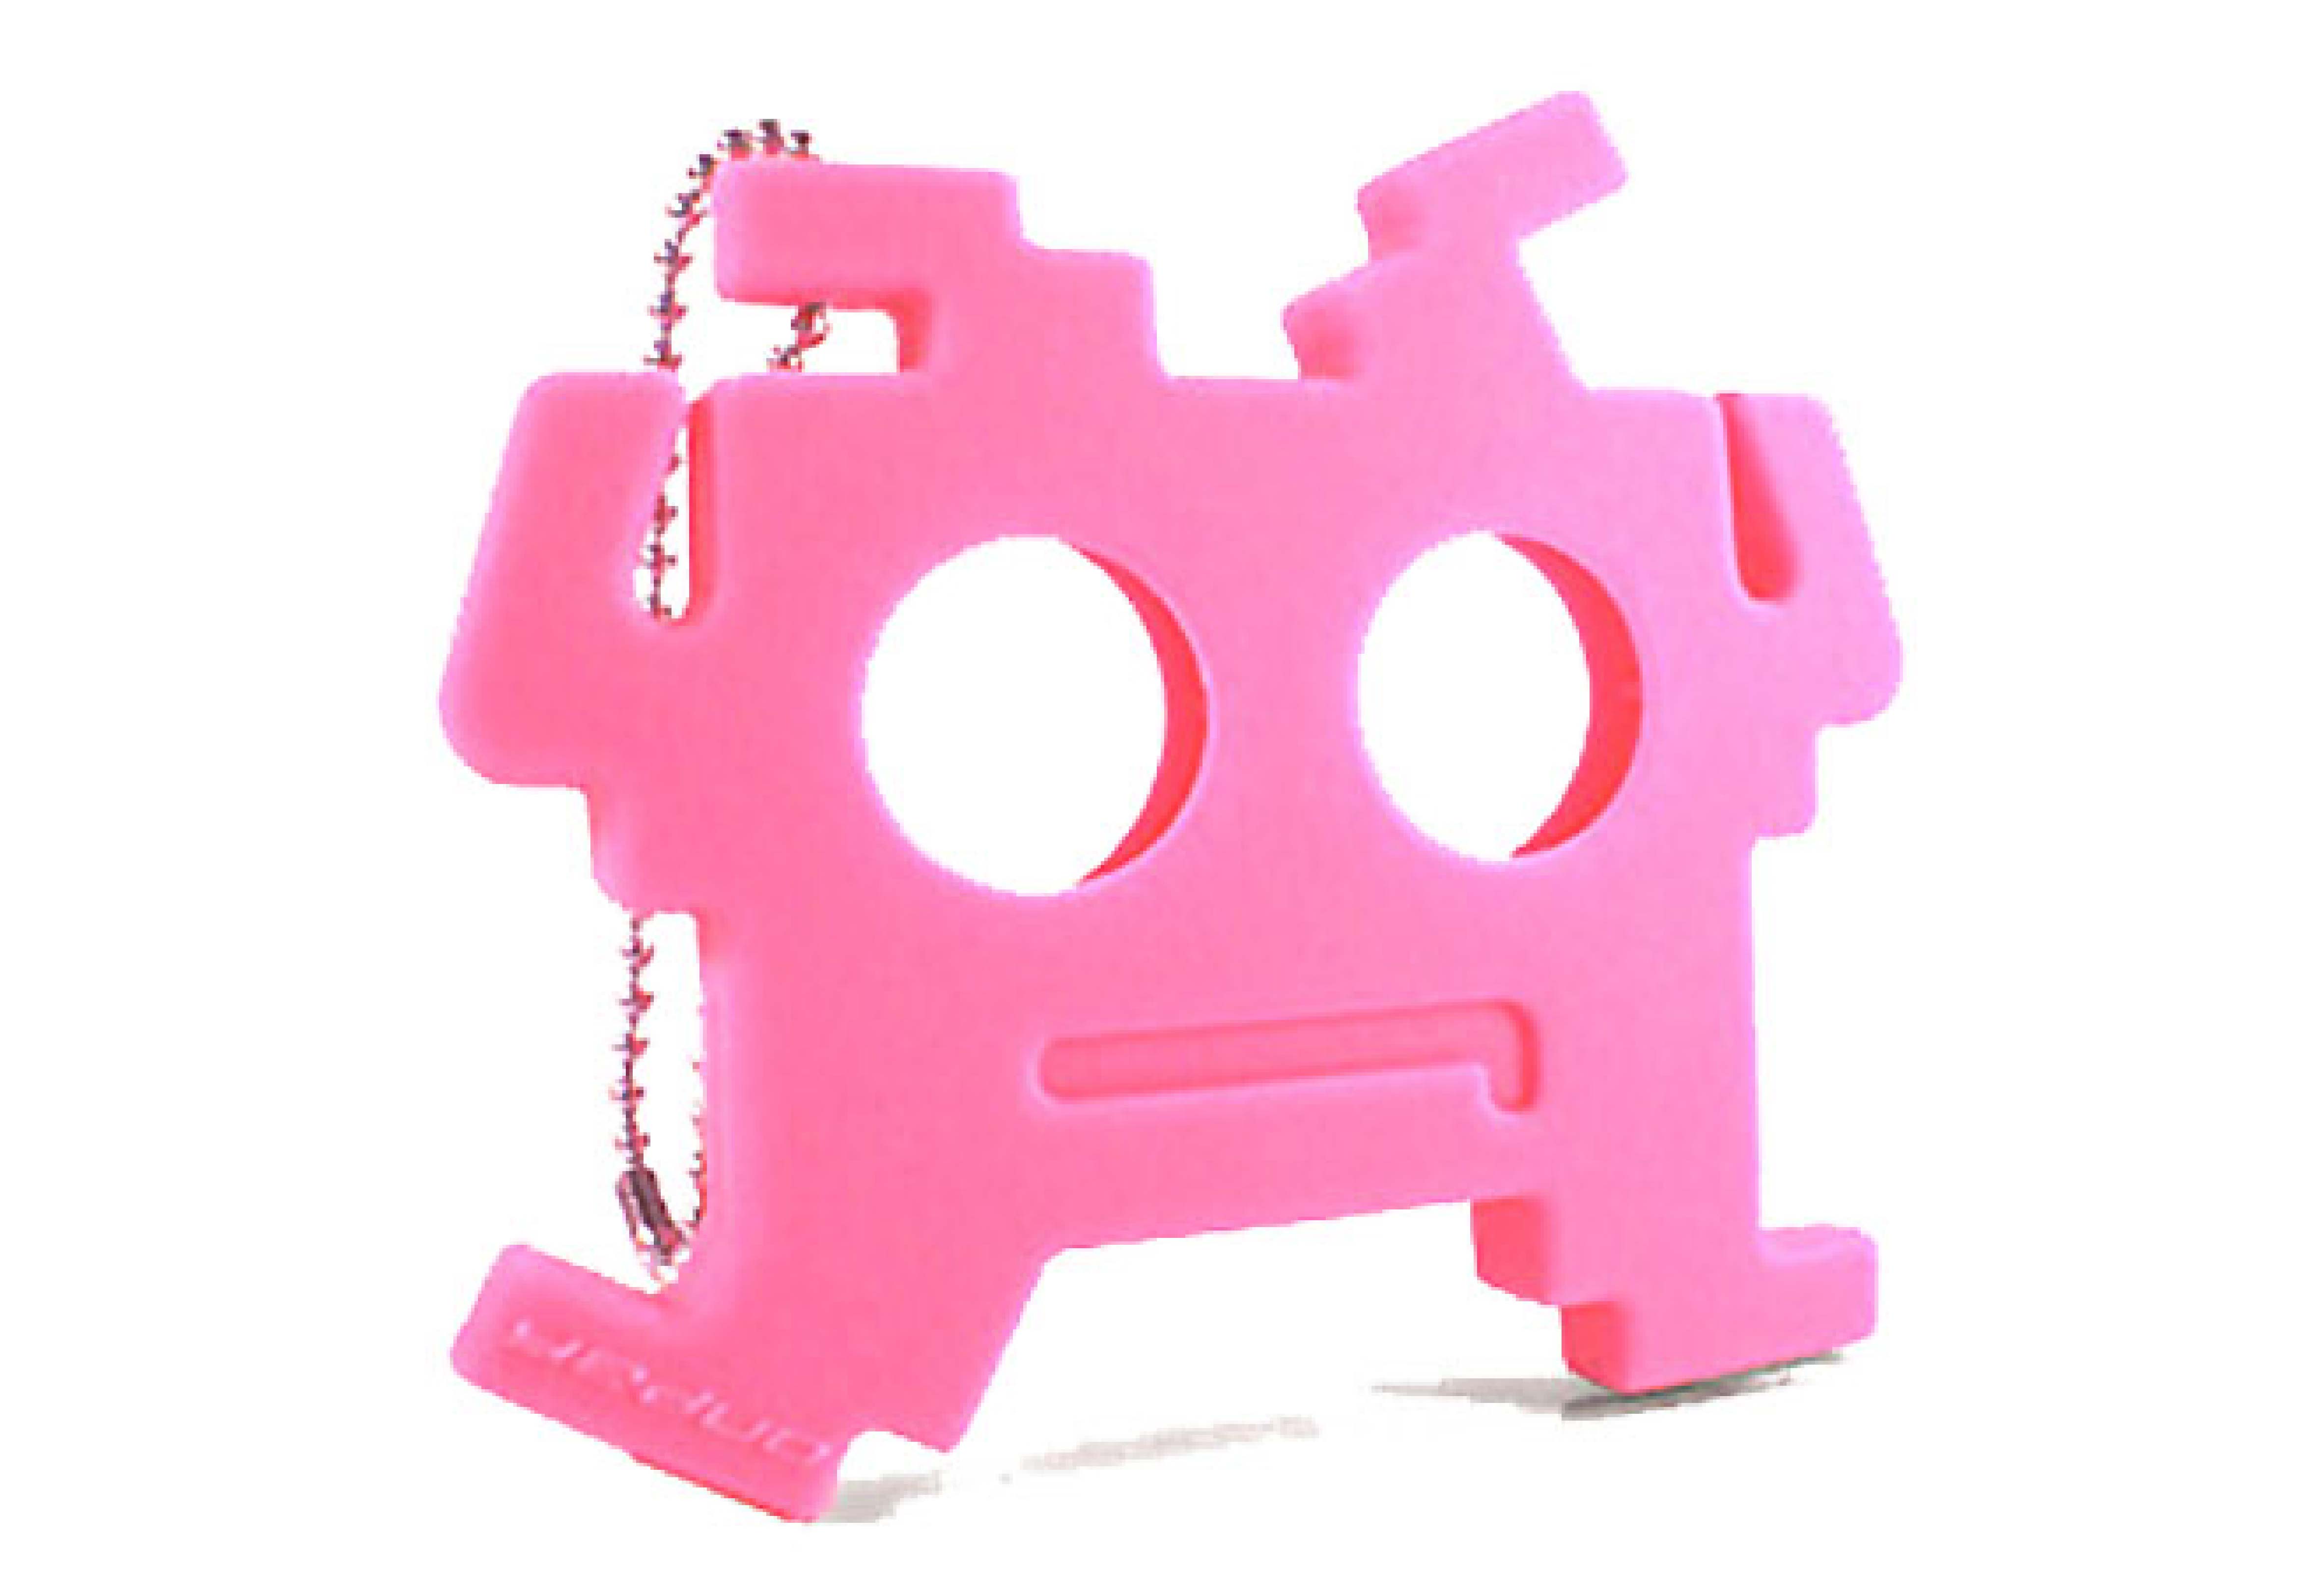 Yeduo 綁架外星人耳機捲線器-粉紅色(耳塞式)